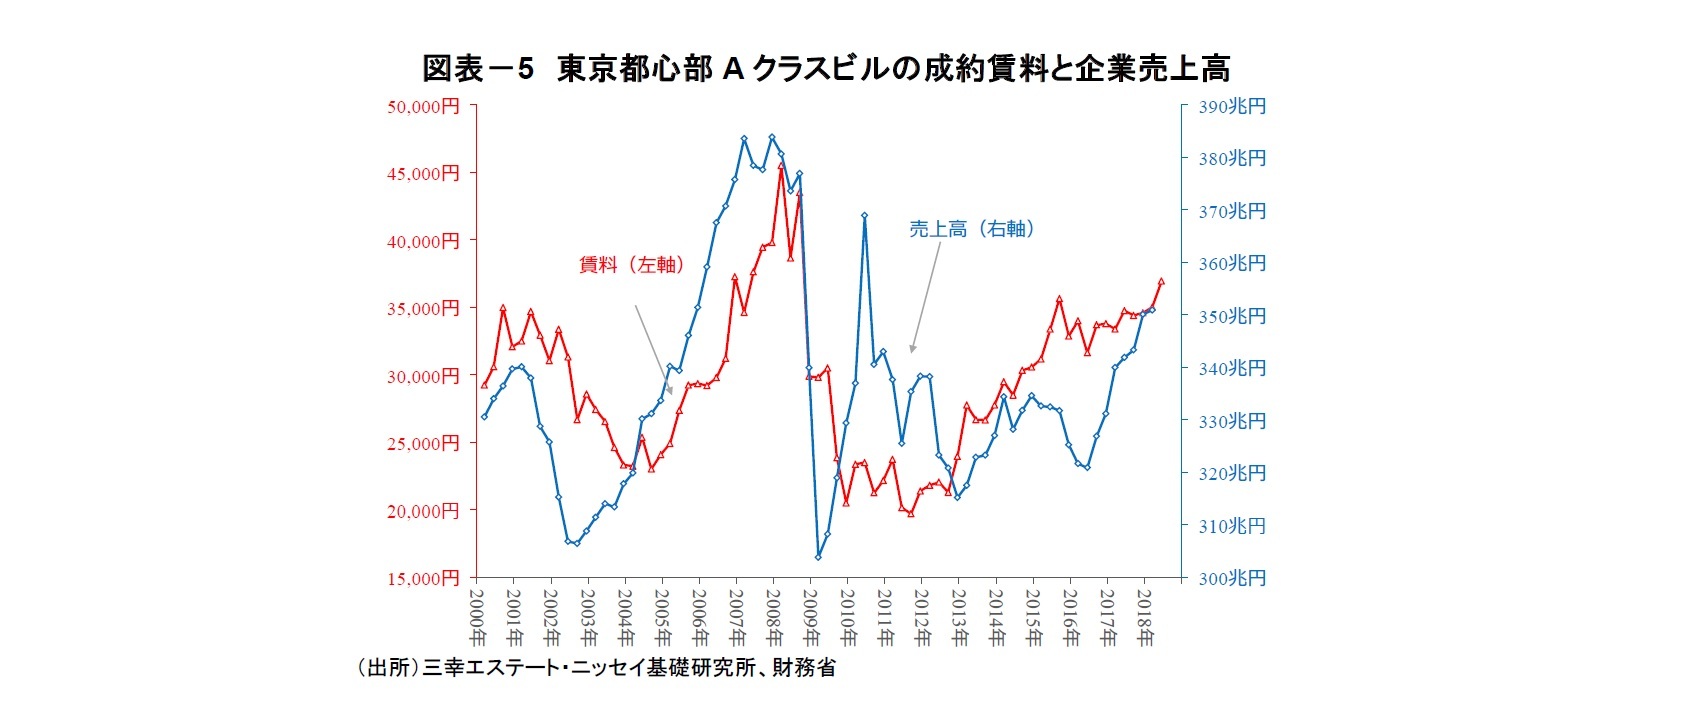 図表－5　東京都心部Aクラスビルの成約賃料と企業売上高